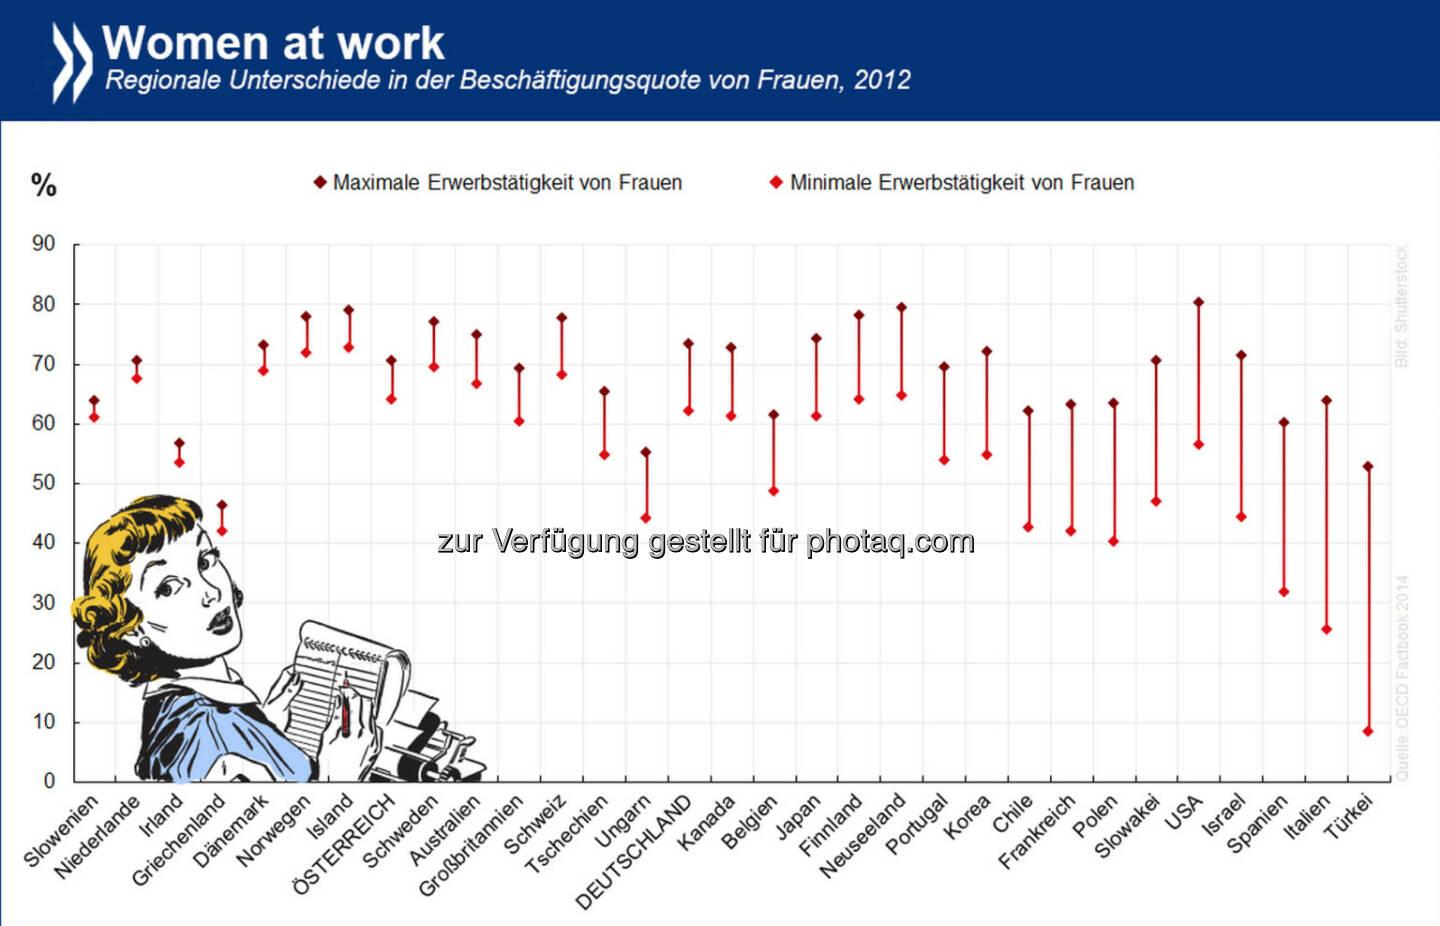 Women at work: Die Beschäftigungsquote von Frauen variiert innerhalb eines Landes oft stärker als zwischen den Ländern. Am größten sind die regionalen Unterschiede in der Türkei. In Irland dagegen ist die Frauenerwerbstätigkeit zwar relativ gering, aber gleichmäßig über die Insel verteilt.

Informiere dich über regionale Beschäftigungsquoten unter http://bit.ly/1z9Ounc (S. 141)